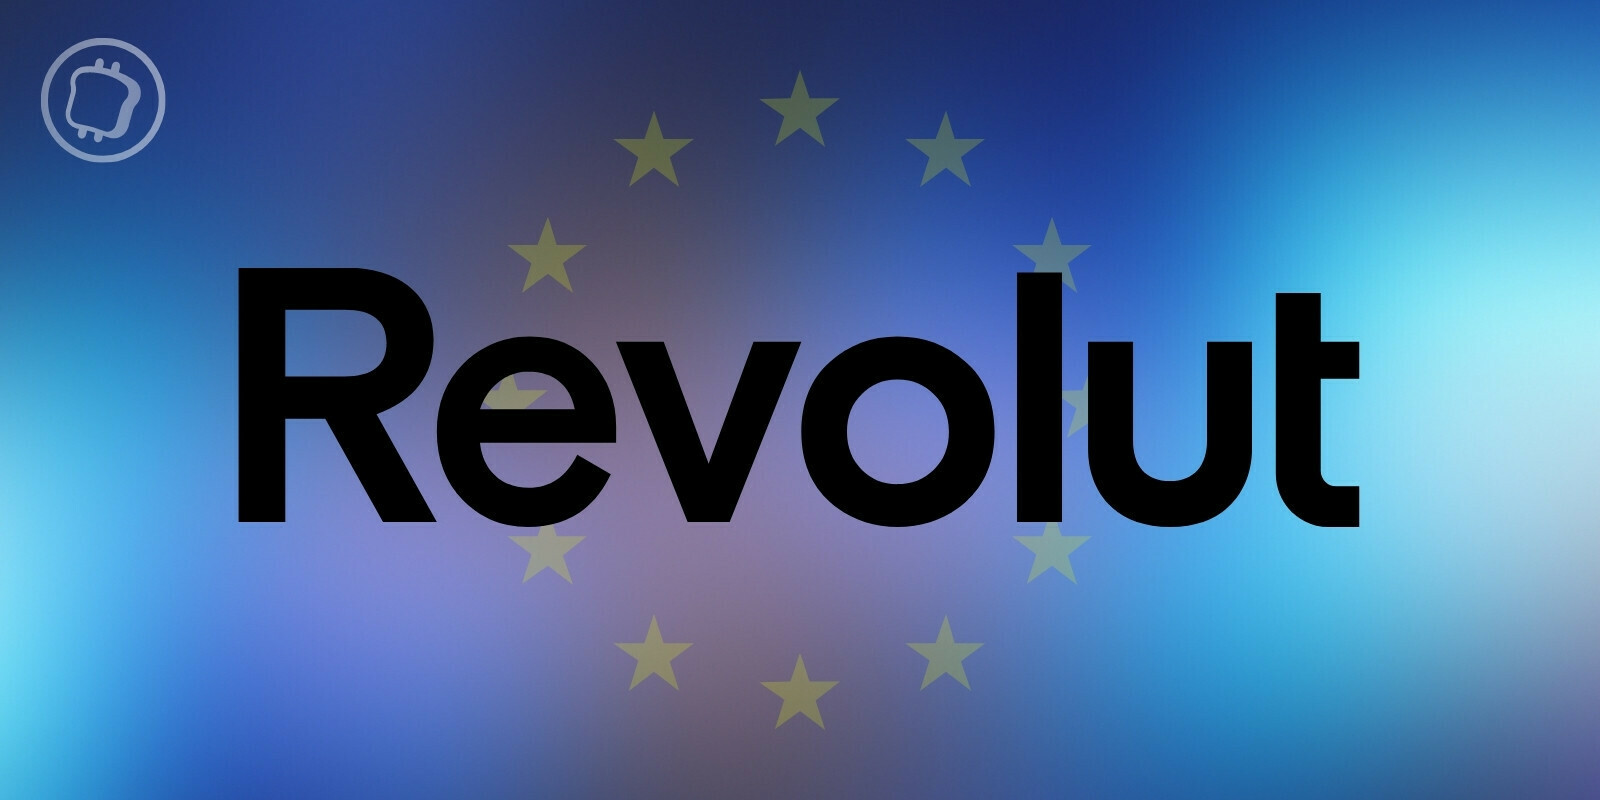 Revolut obtient l'approbation de la CySEC afin de renforcer ses services crypto en Europe